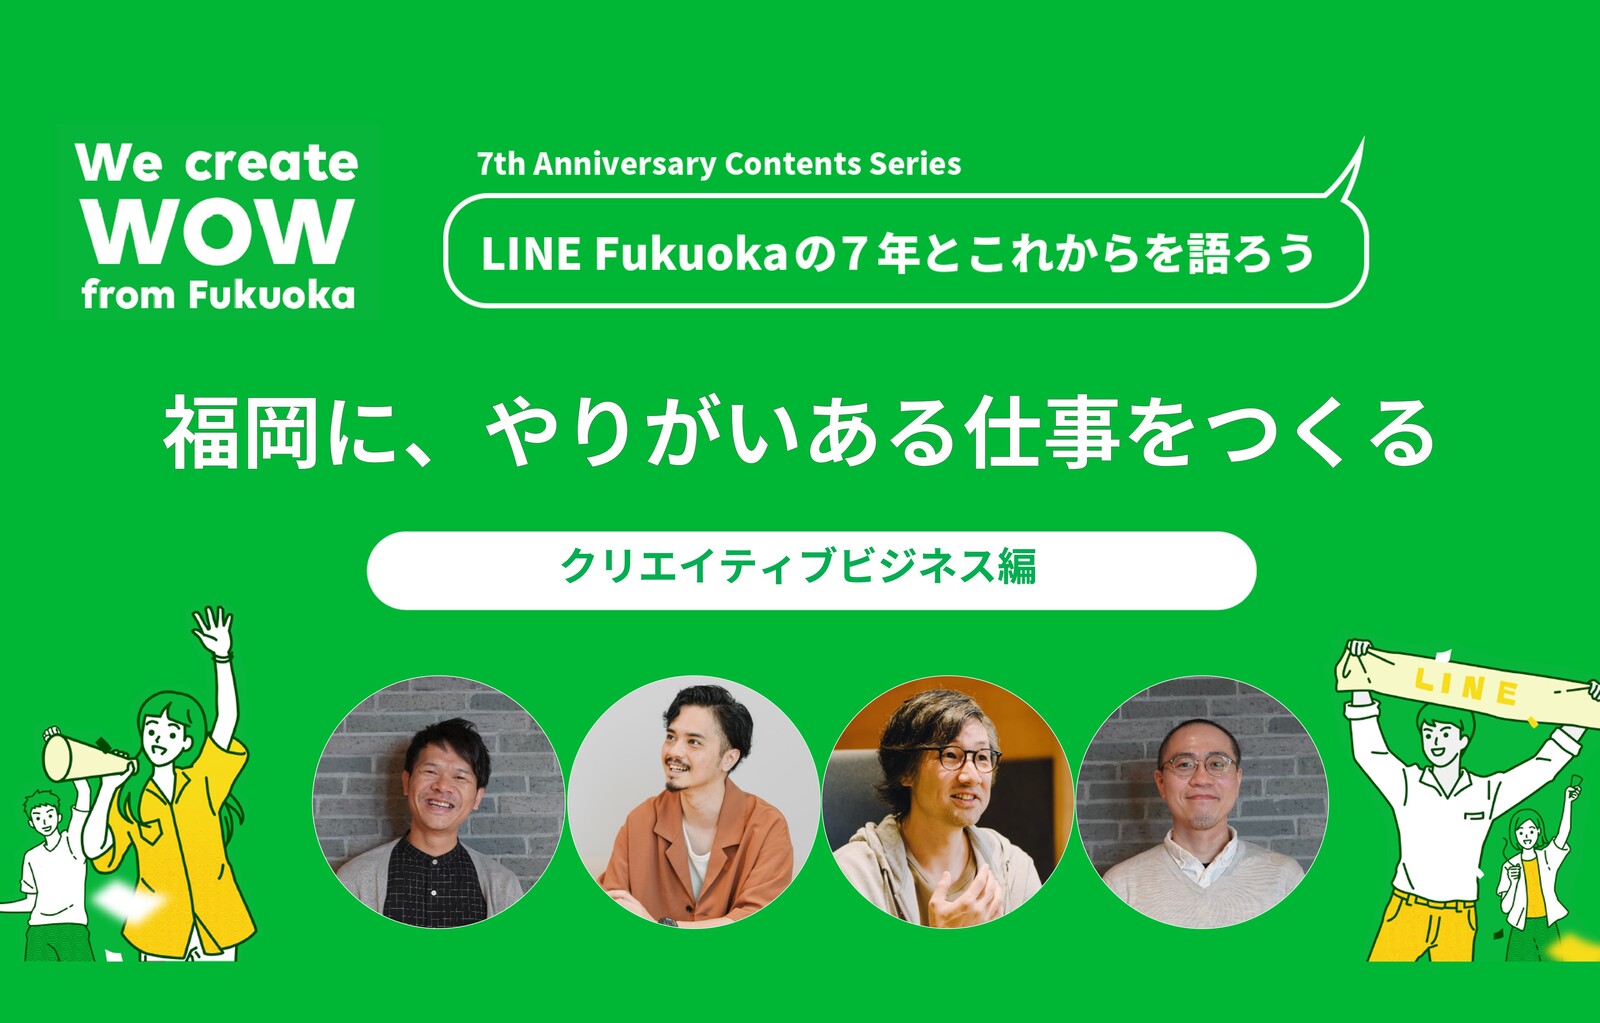 福岡に、「やりがいある仕事」をつくる―LINE Fukuoka「クリエイティブビジネス」の7年とこれから サムネイル画像